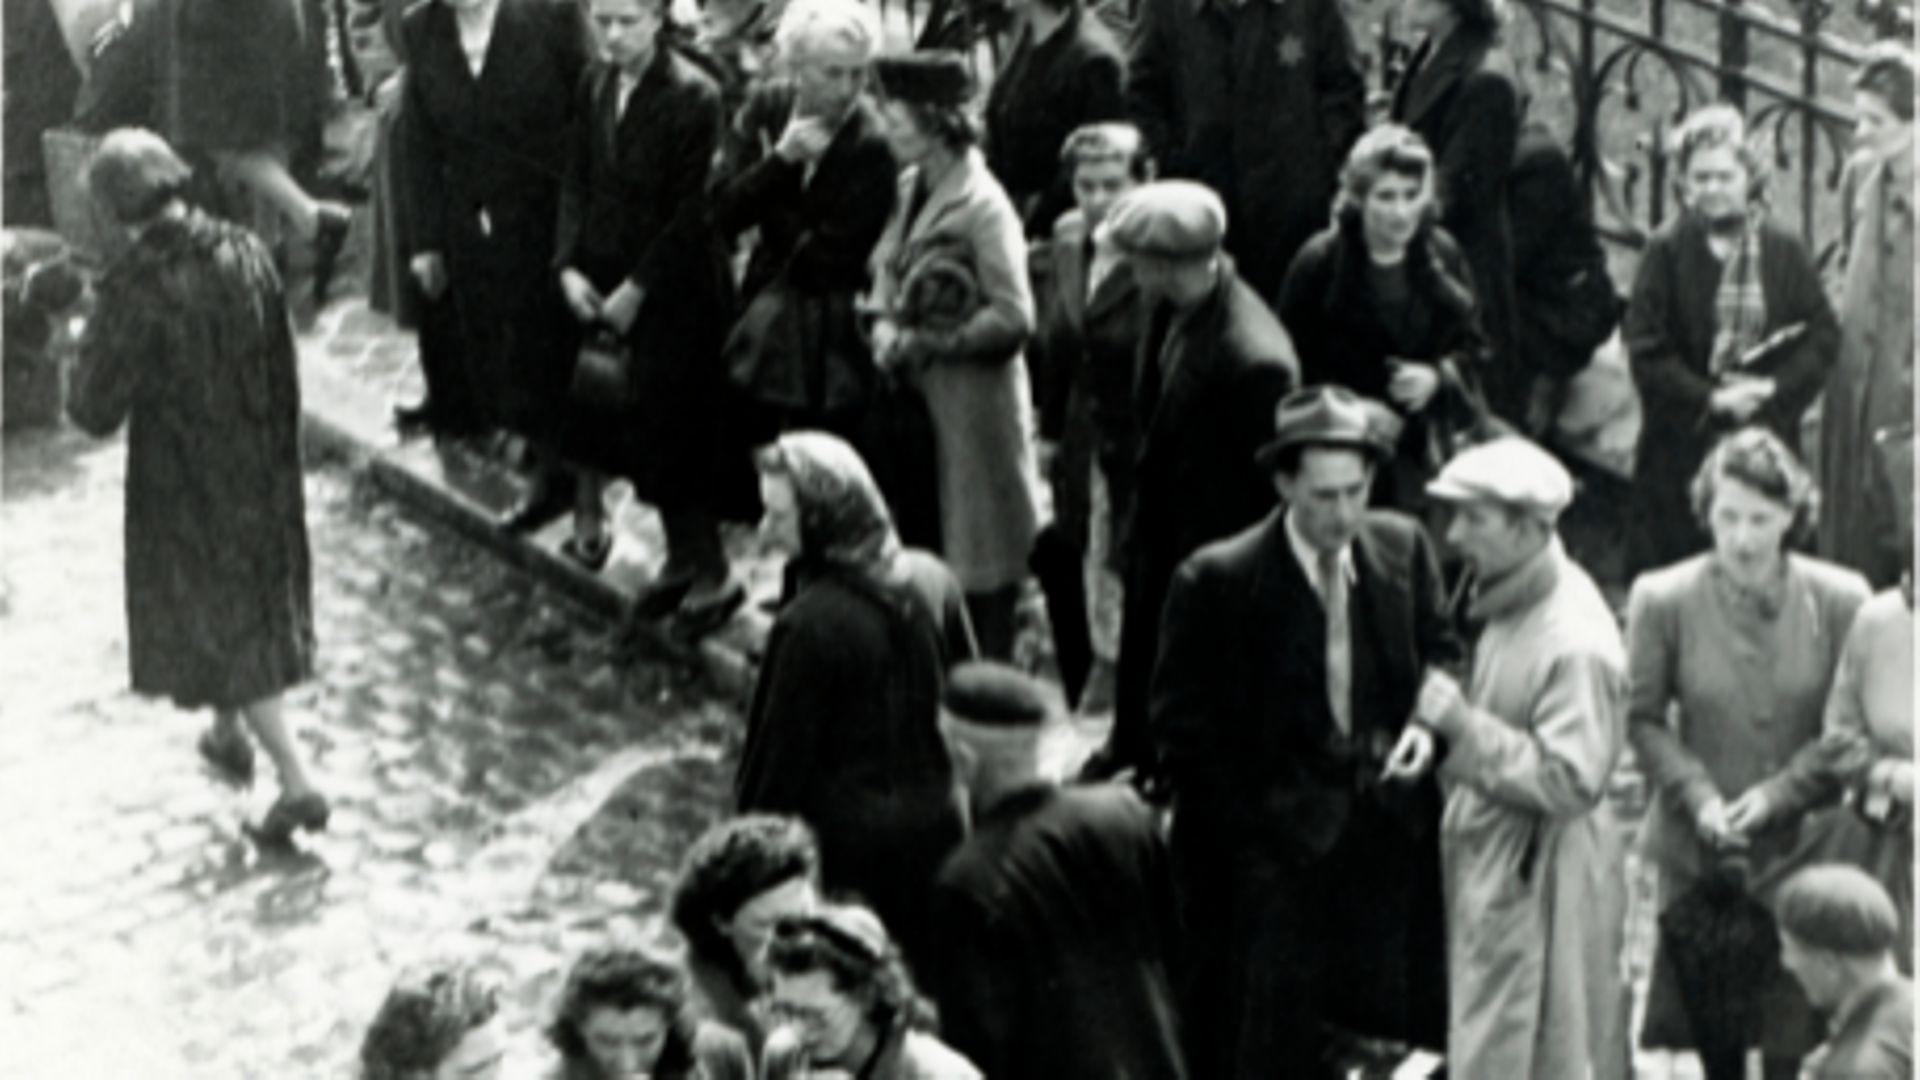 Une photo rare sur la déportation des Juifs de Belgique vient d'être identifiée